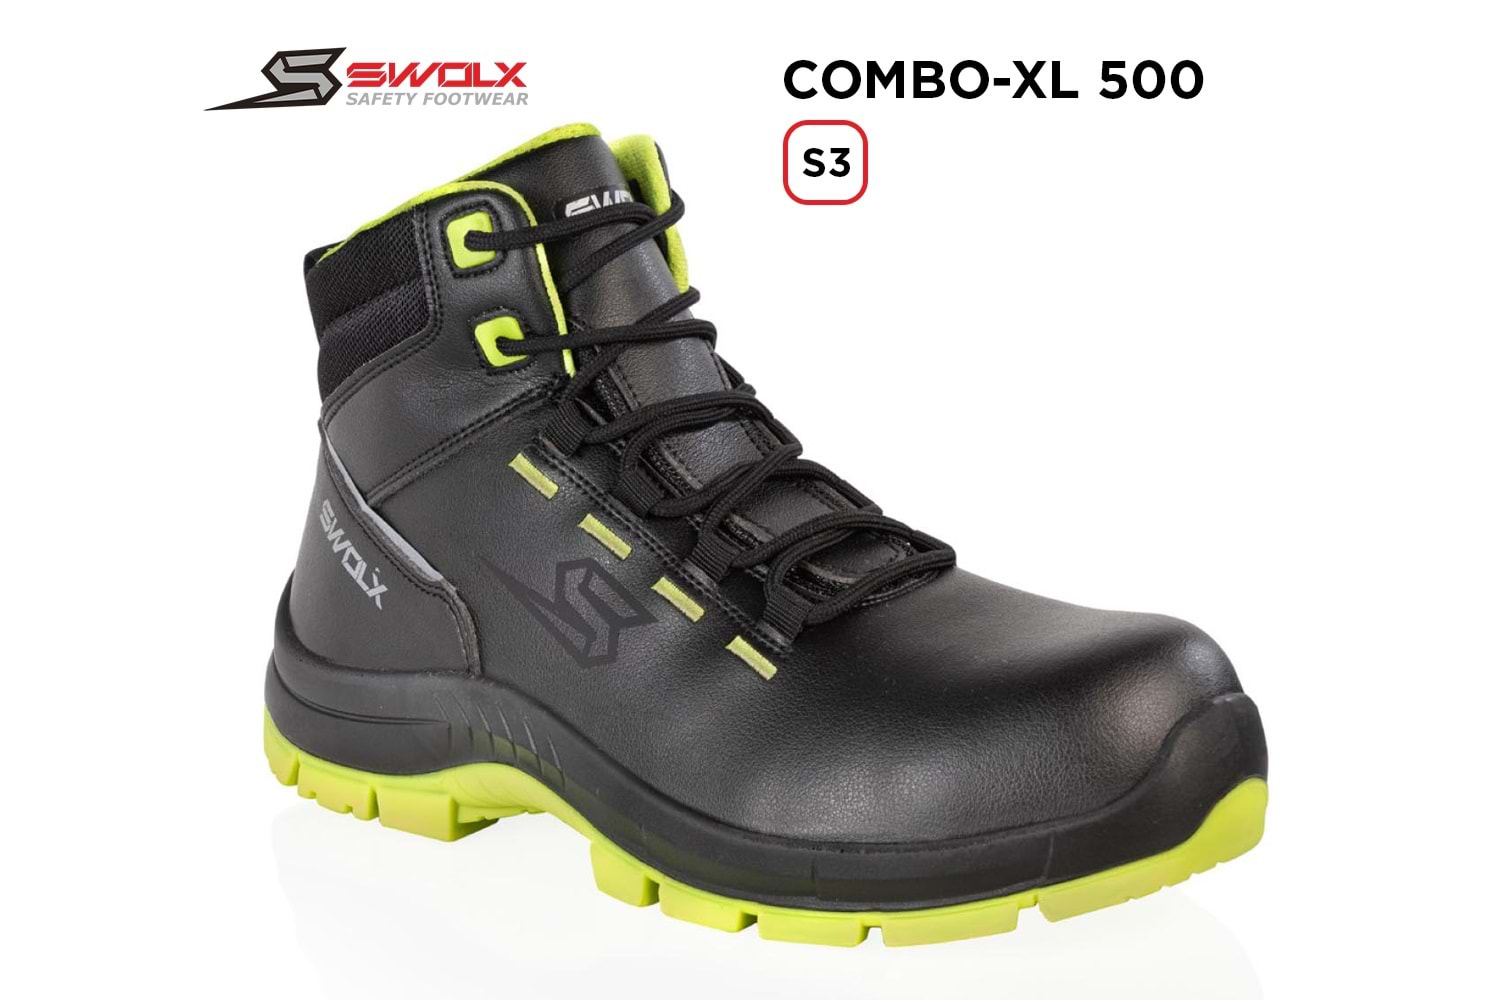 Swolx İş Ayakkabısı - Combo-Xl 500 S3 - 43